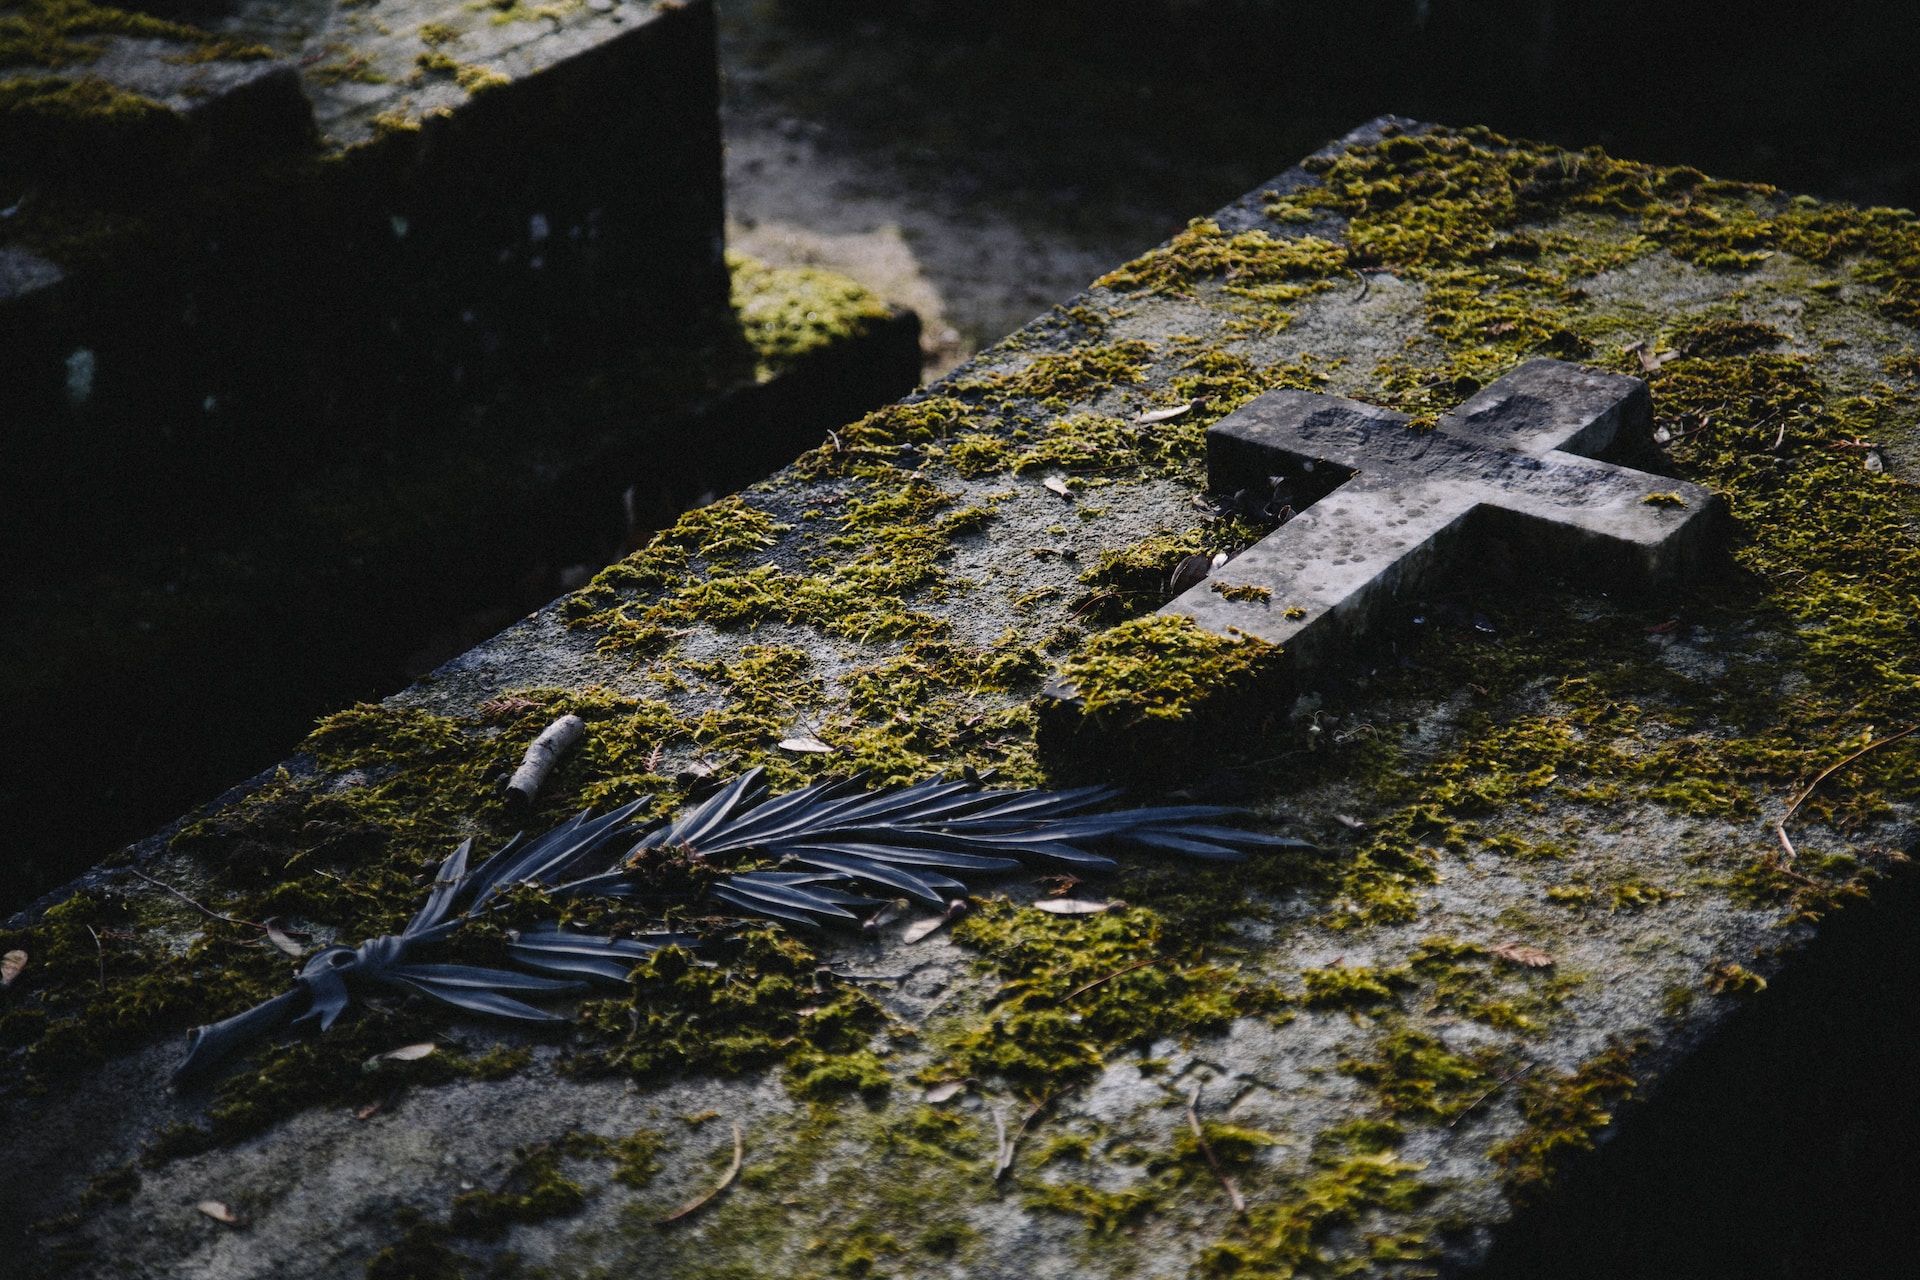 Une tombe moussue au cimetière du Père Lachaise - Merci à Kenny Orr sur https://unsplash.com/fr/photos/de-leau-sur-des-escaliers-en-beton-gris-1AVTo_bdHWs